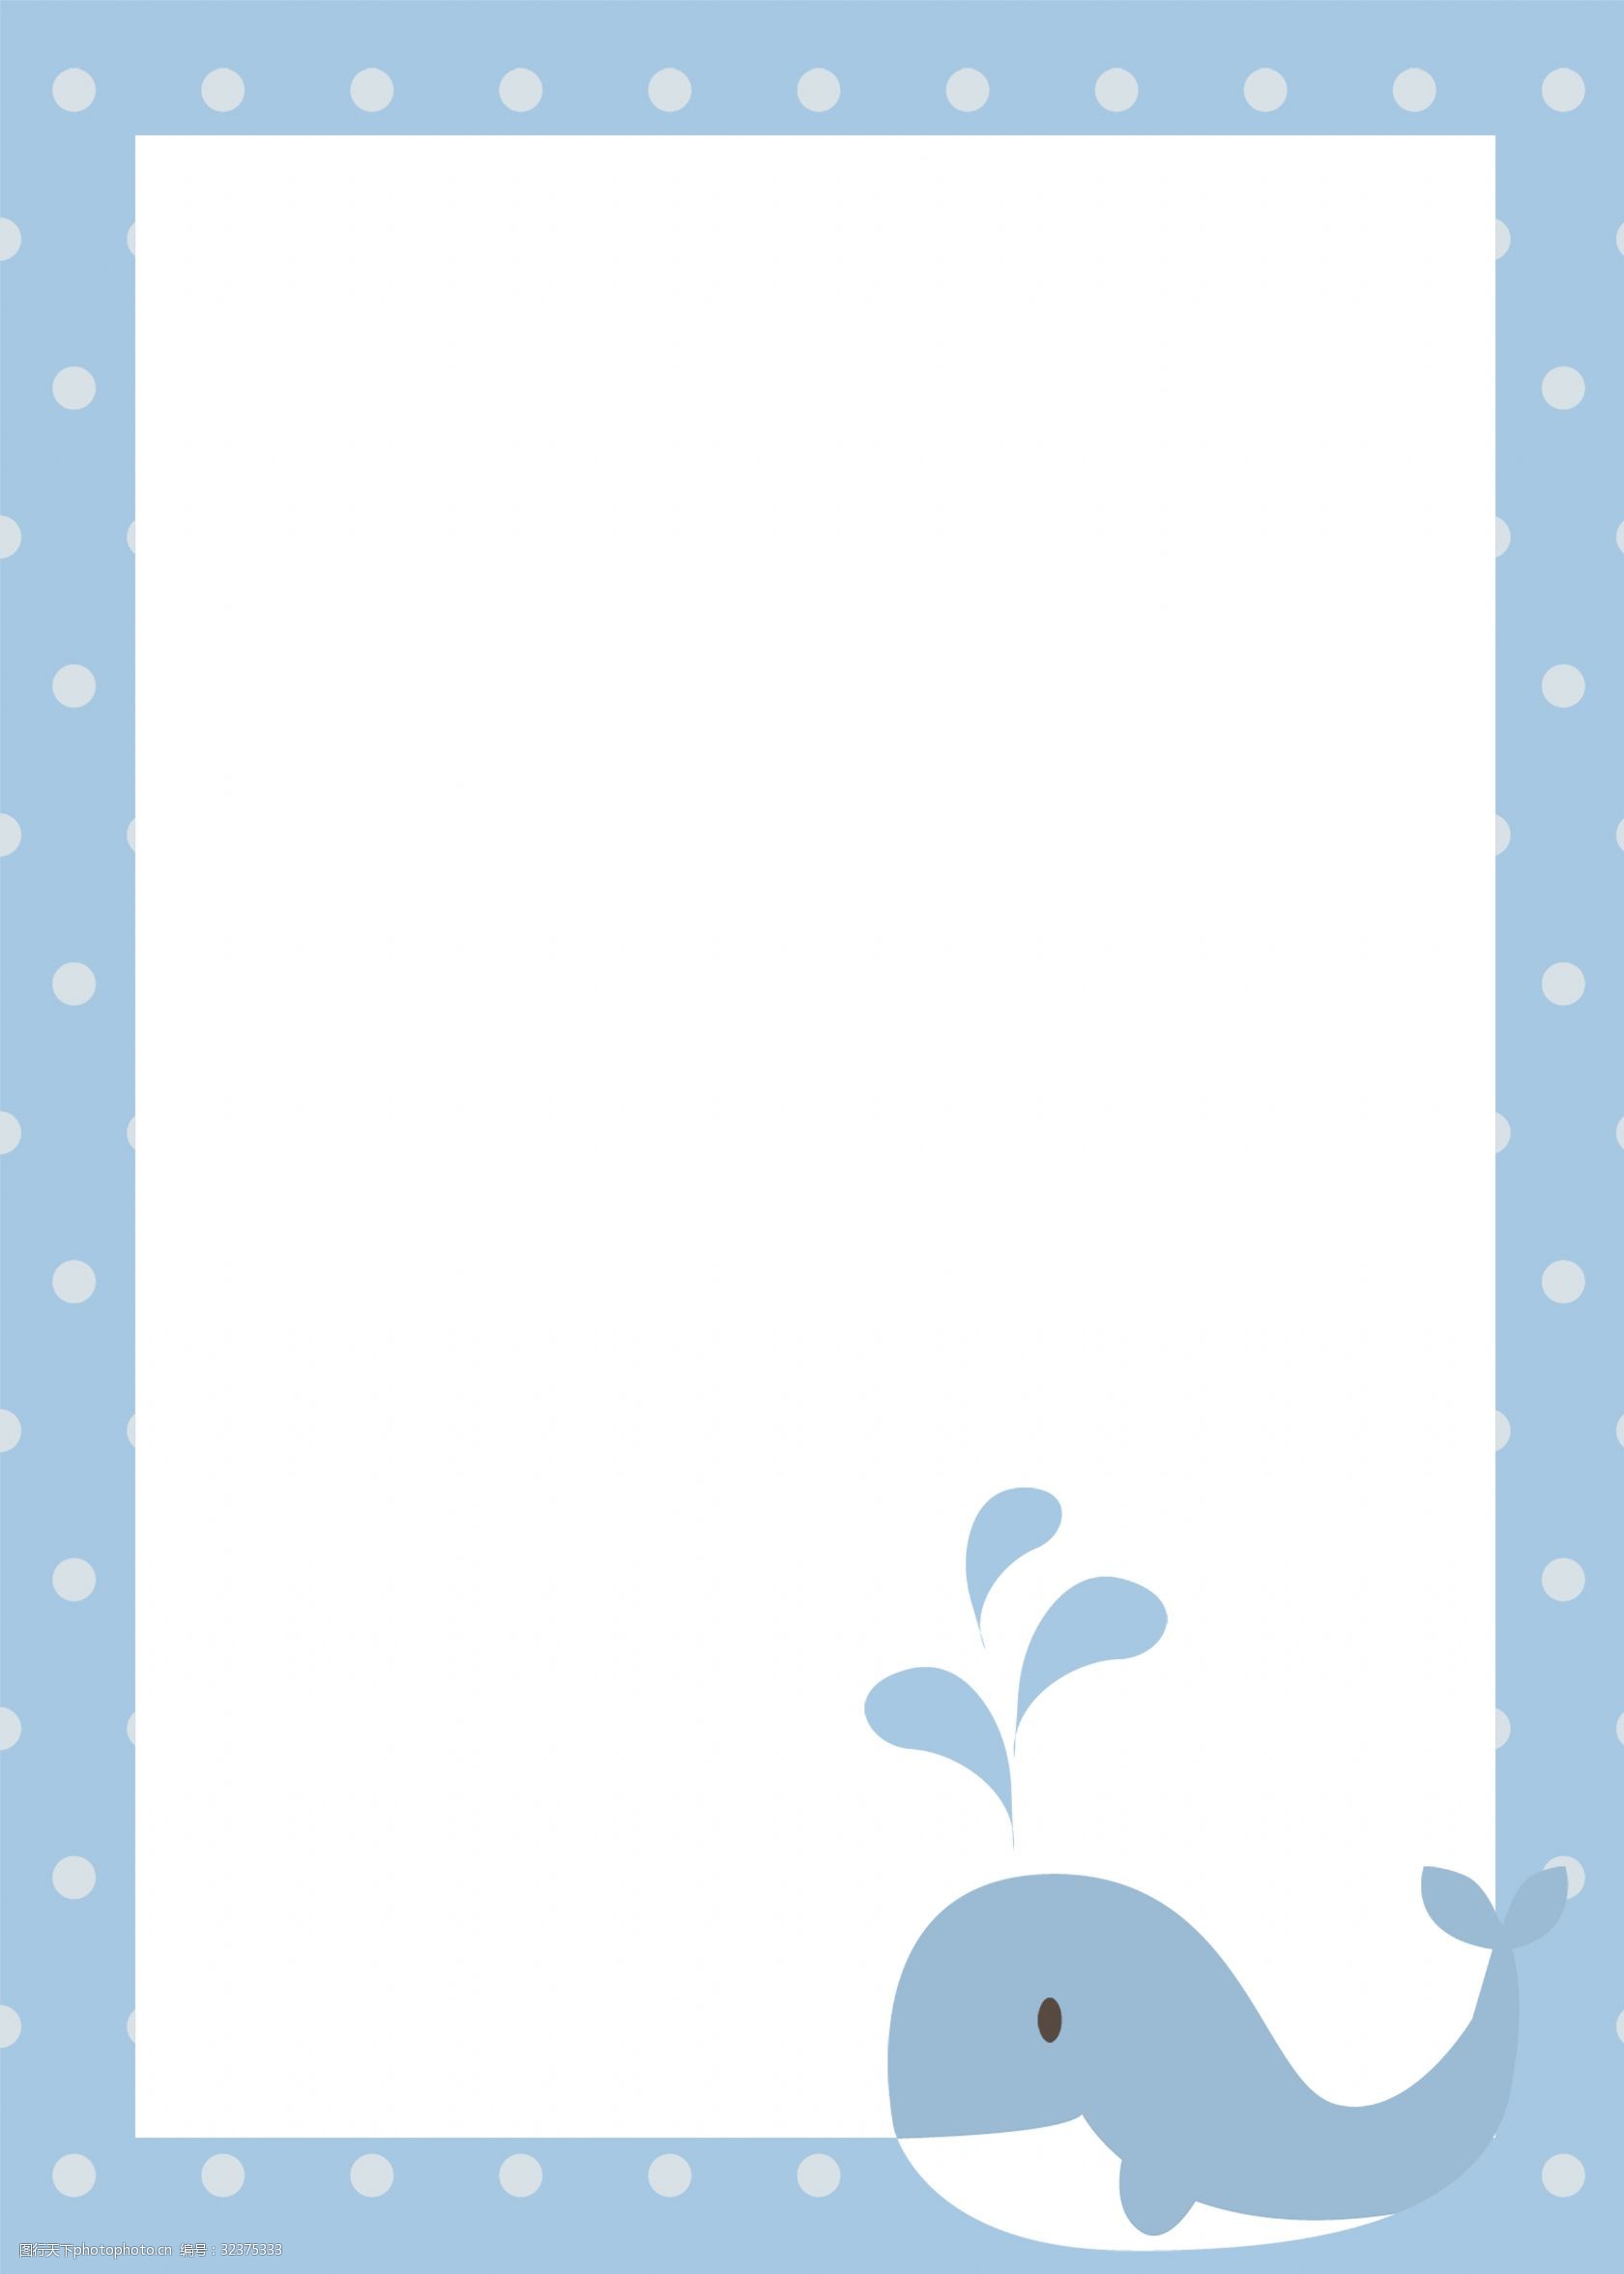 关键词:蓝色的鲸鱼边框插画 蓝色的边框 鲸鱼边框 创意边框 海洋生物